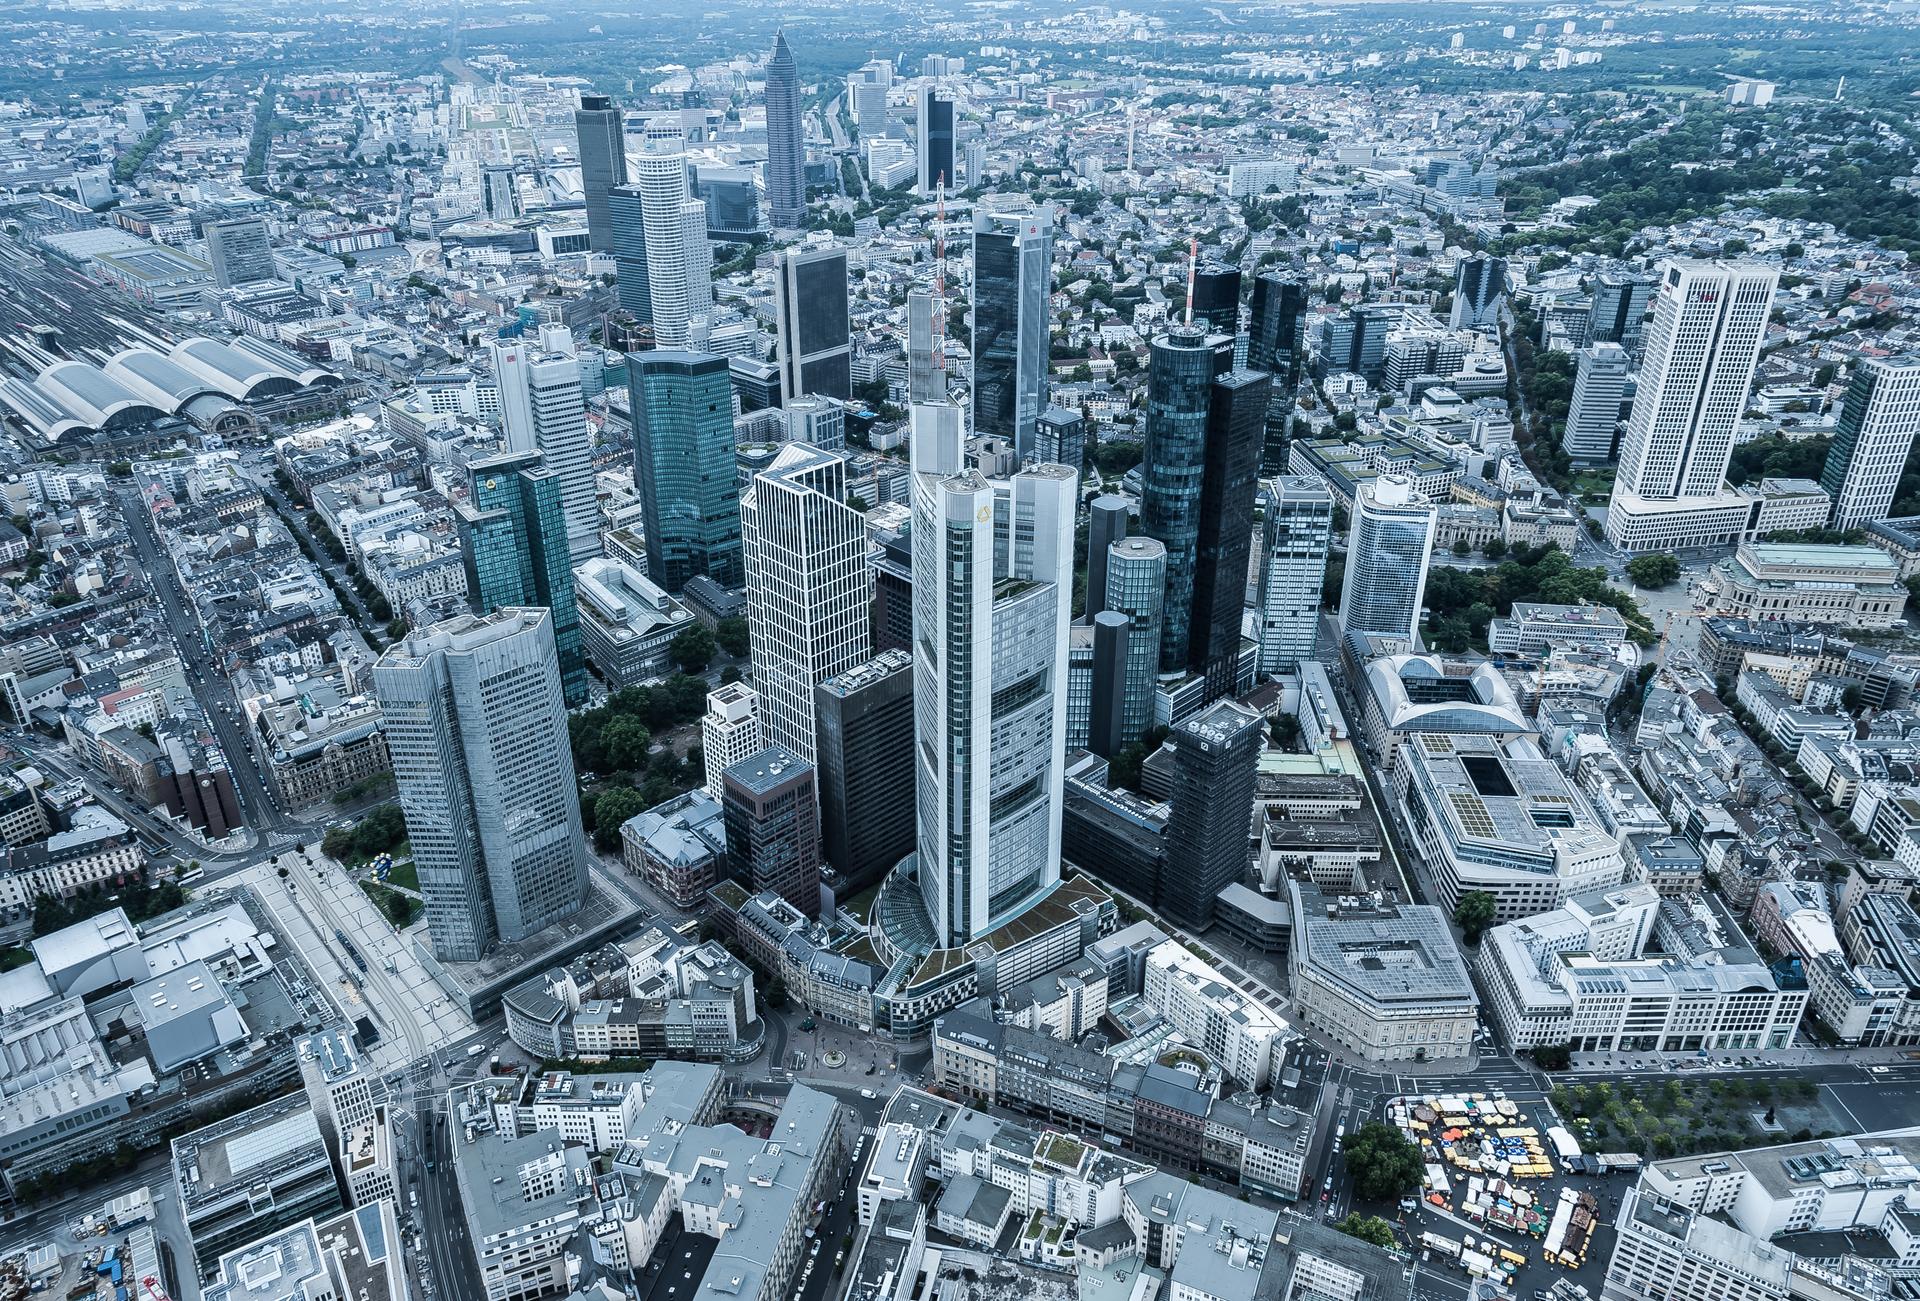 Vontobel in Frankfurt - View over the city of Frankfurt